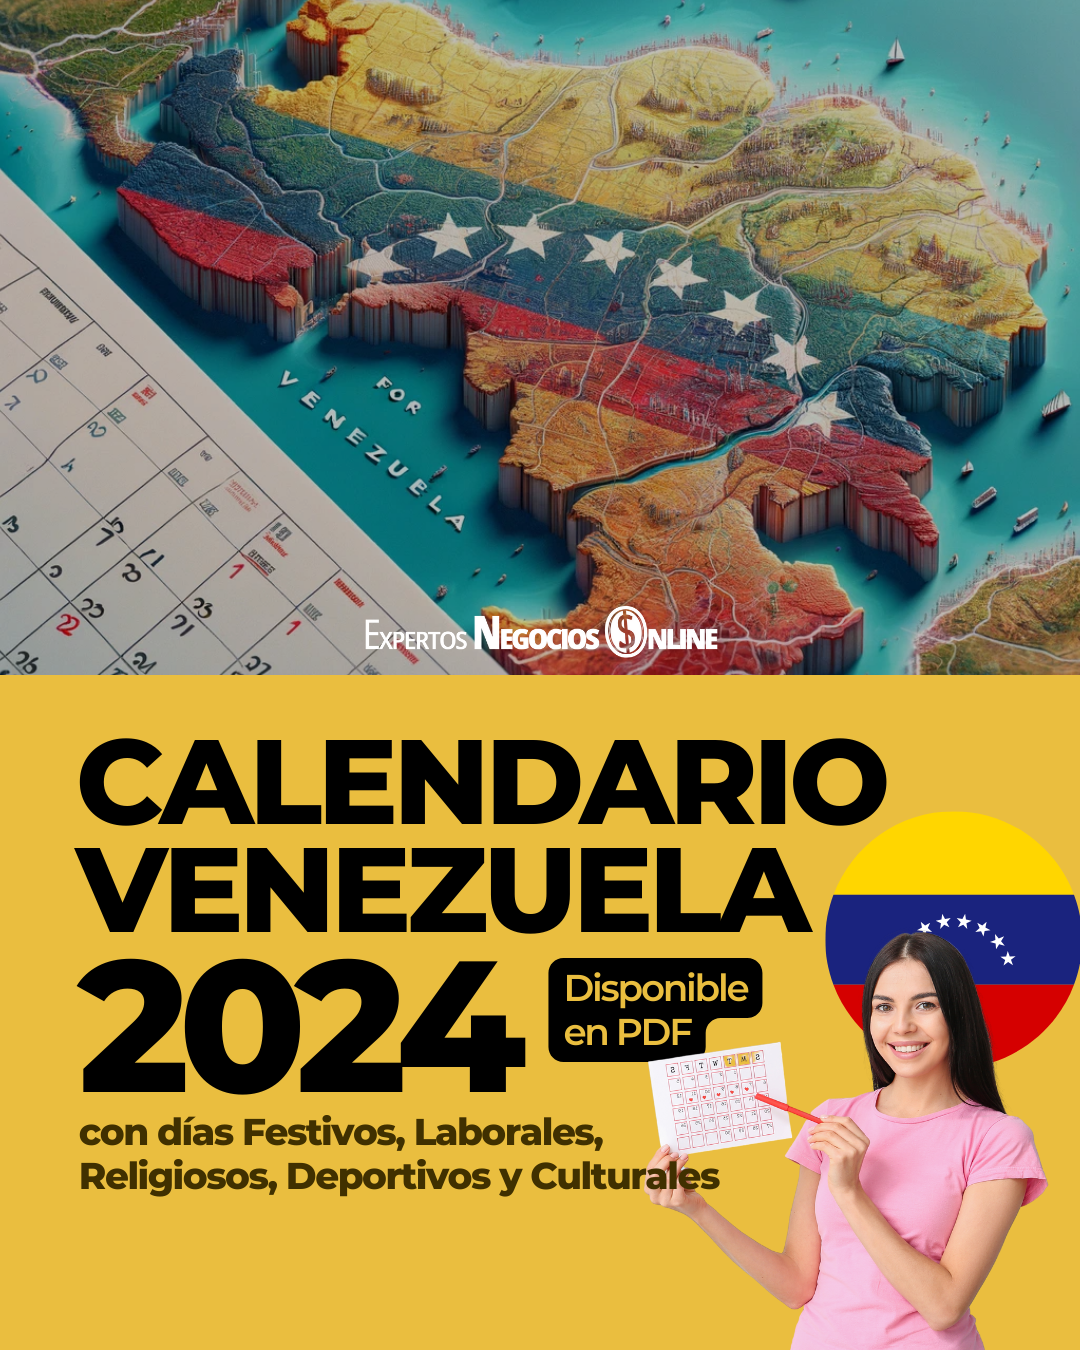 Calendario comercial Venezuela 2024 con feriados y fechas importantes para Marketing